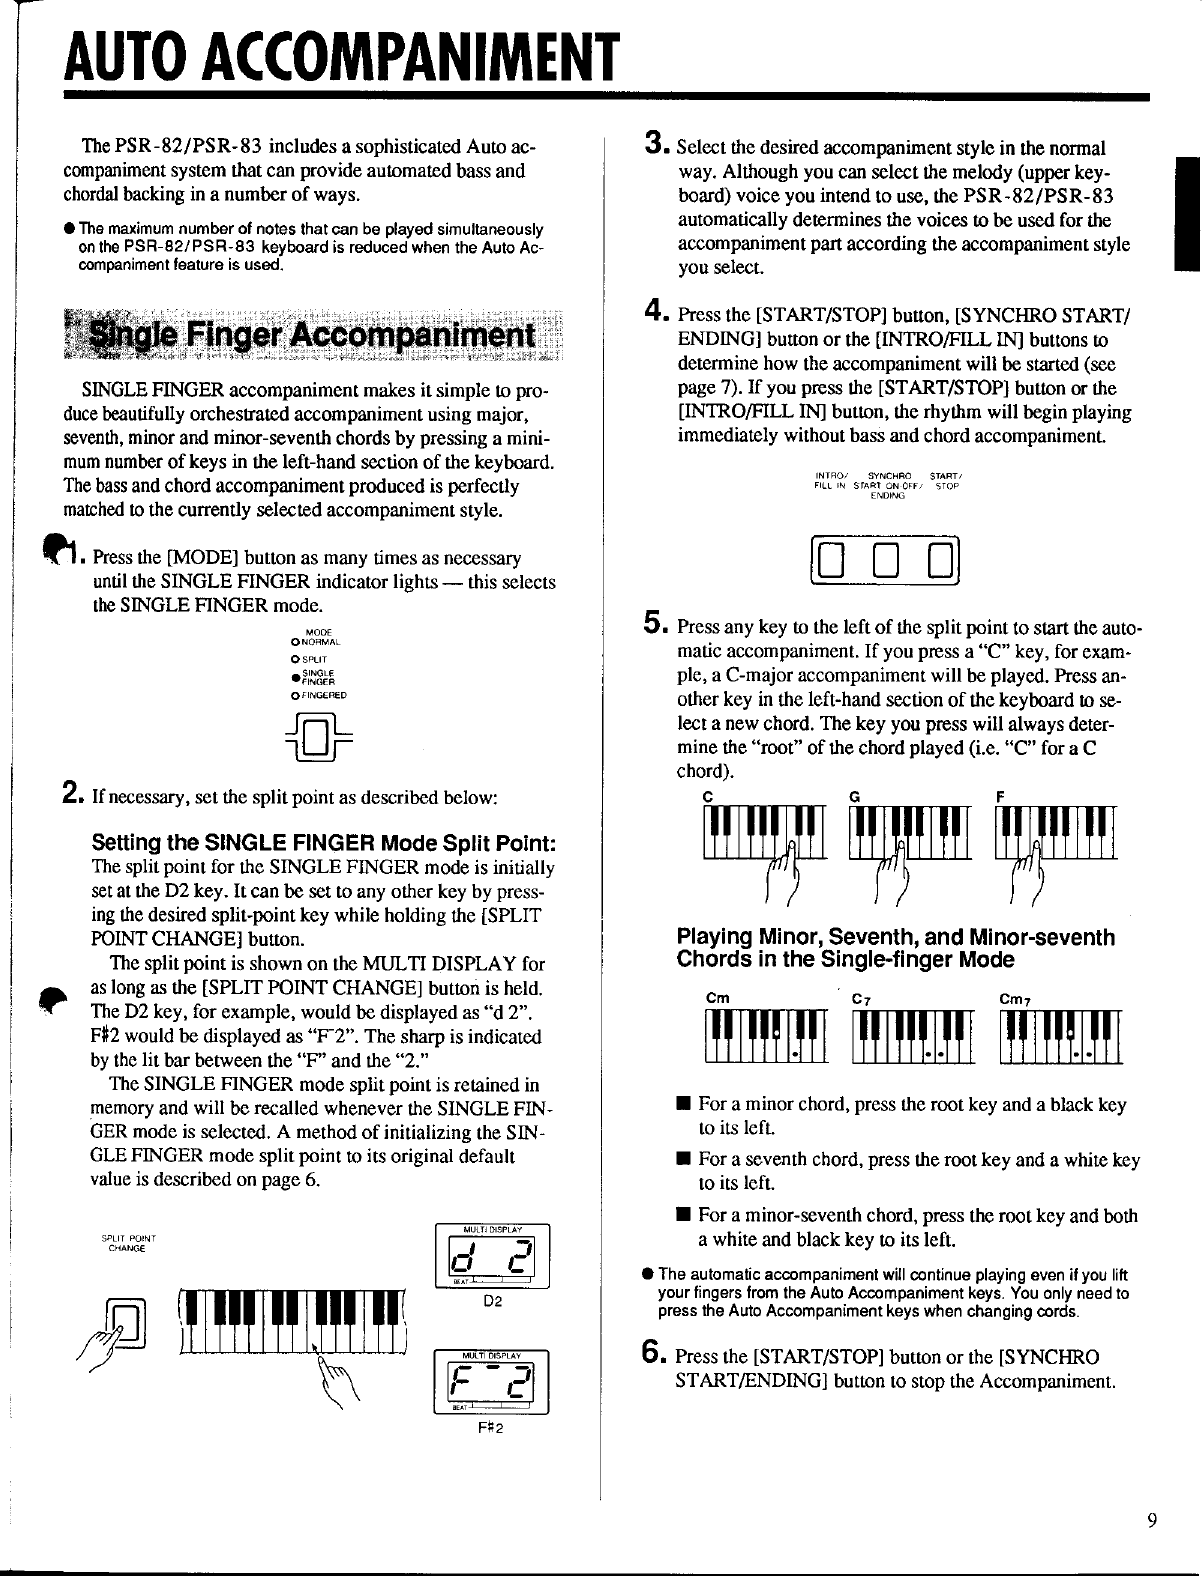 Yamaha PSR 83/PSR 82 Owner's Manual (Image) PSR83E